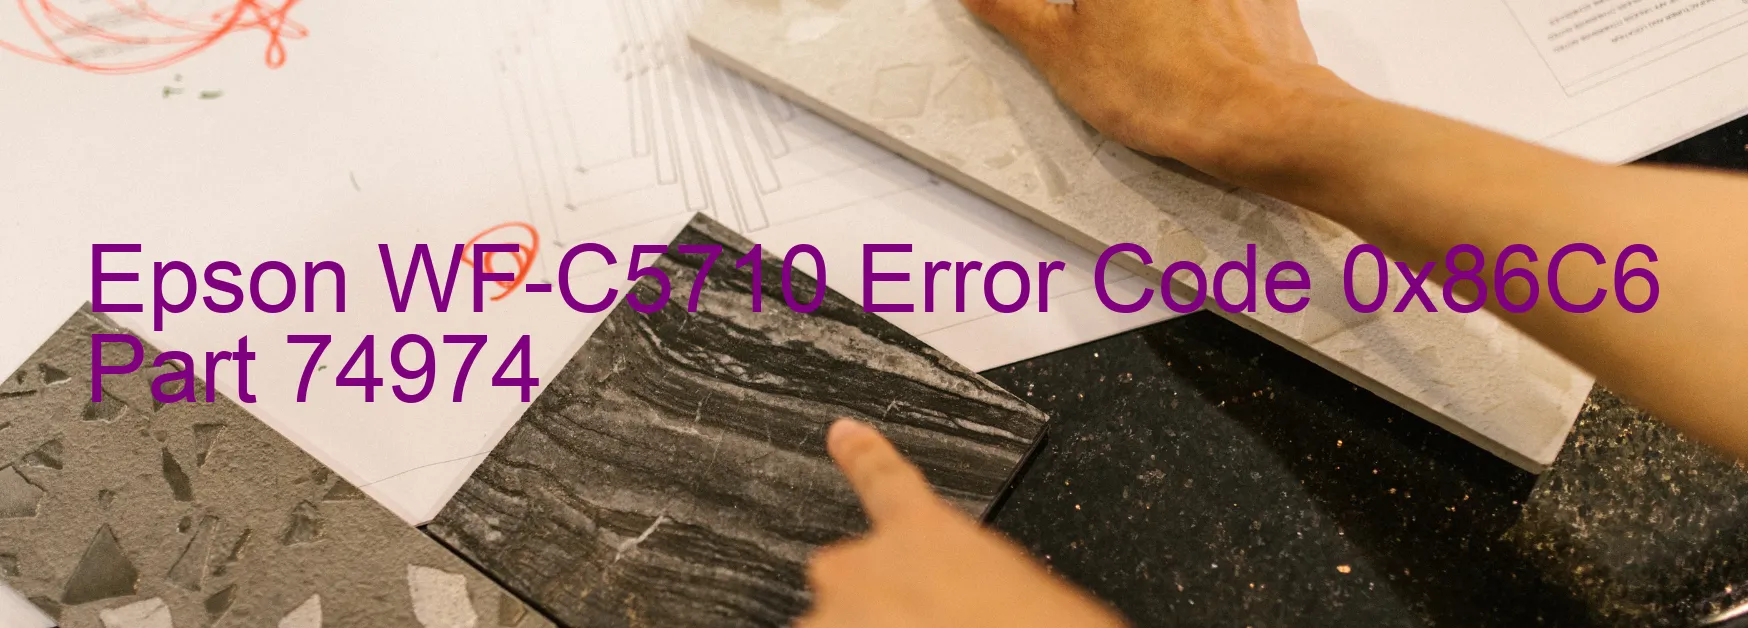 Epson WF-C5710 Error Code 0x86C6 Part 74974